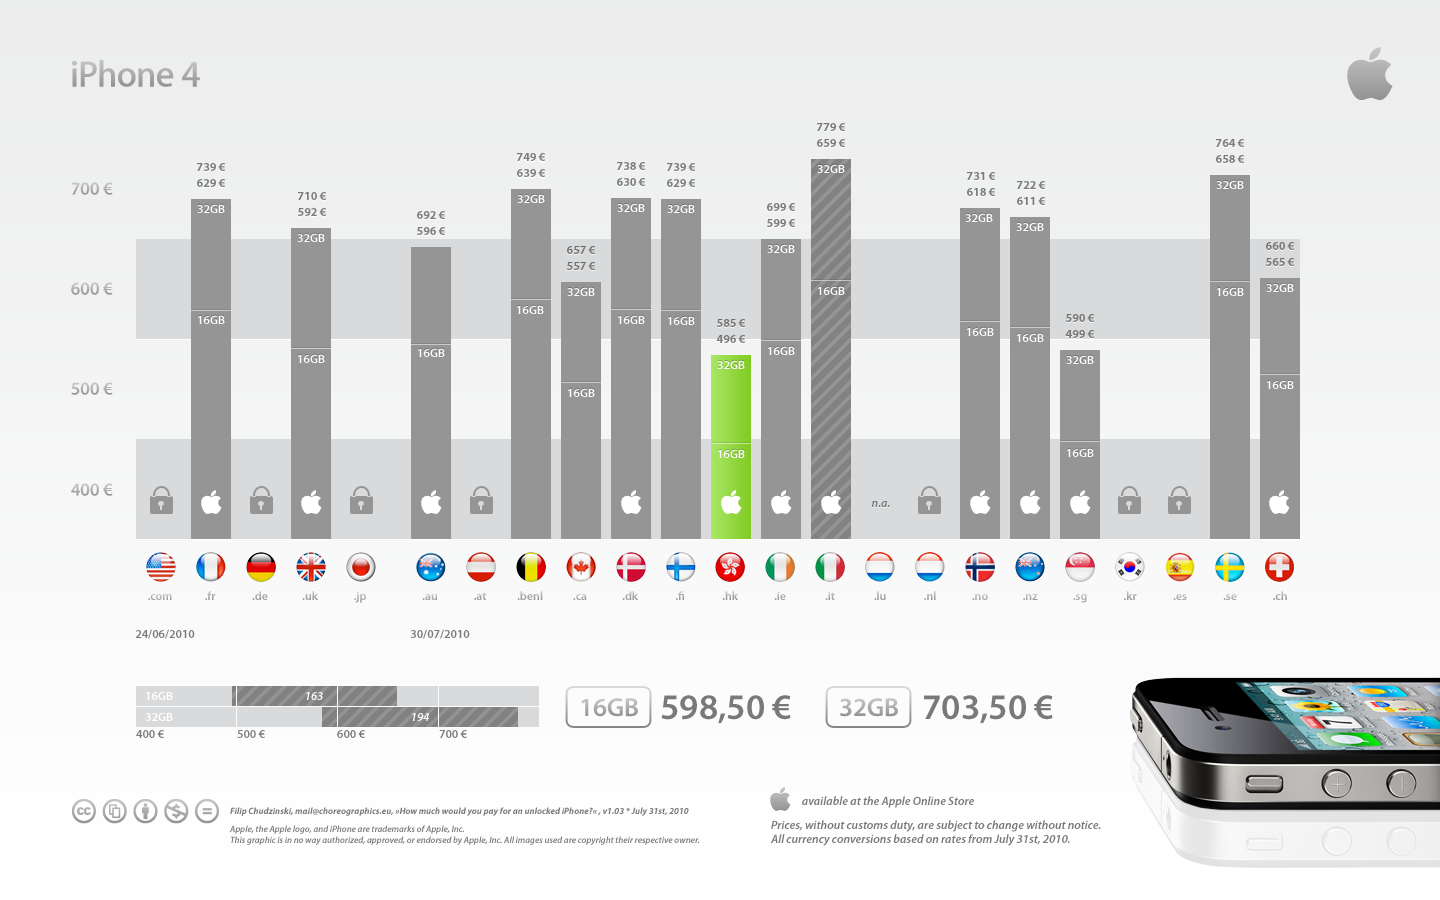 Preços do iPhone 4 desbloqueado no mundo